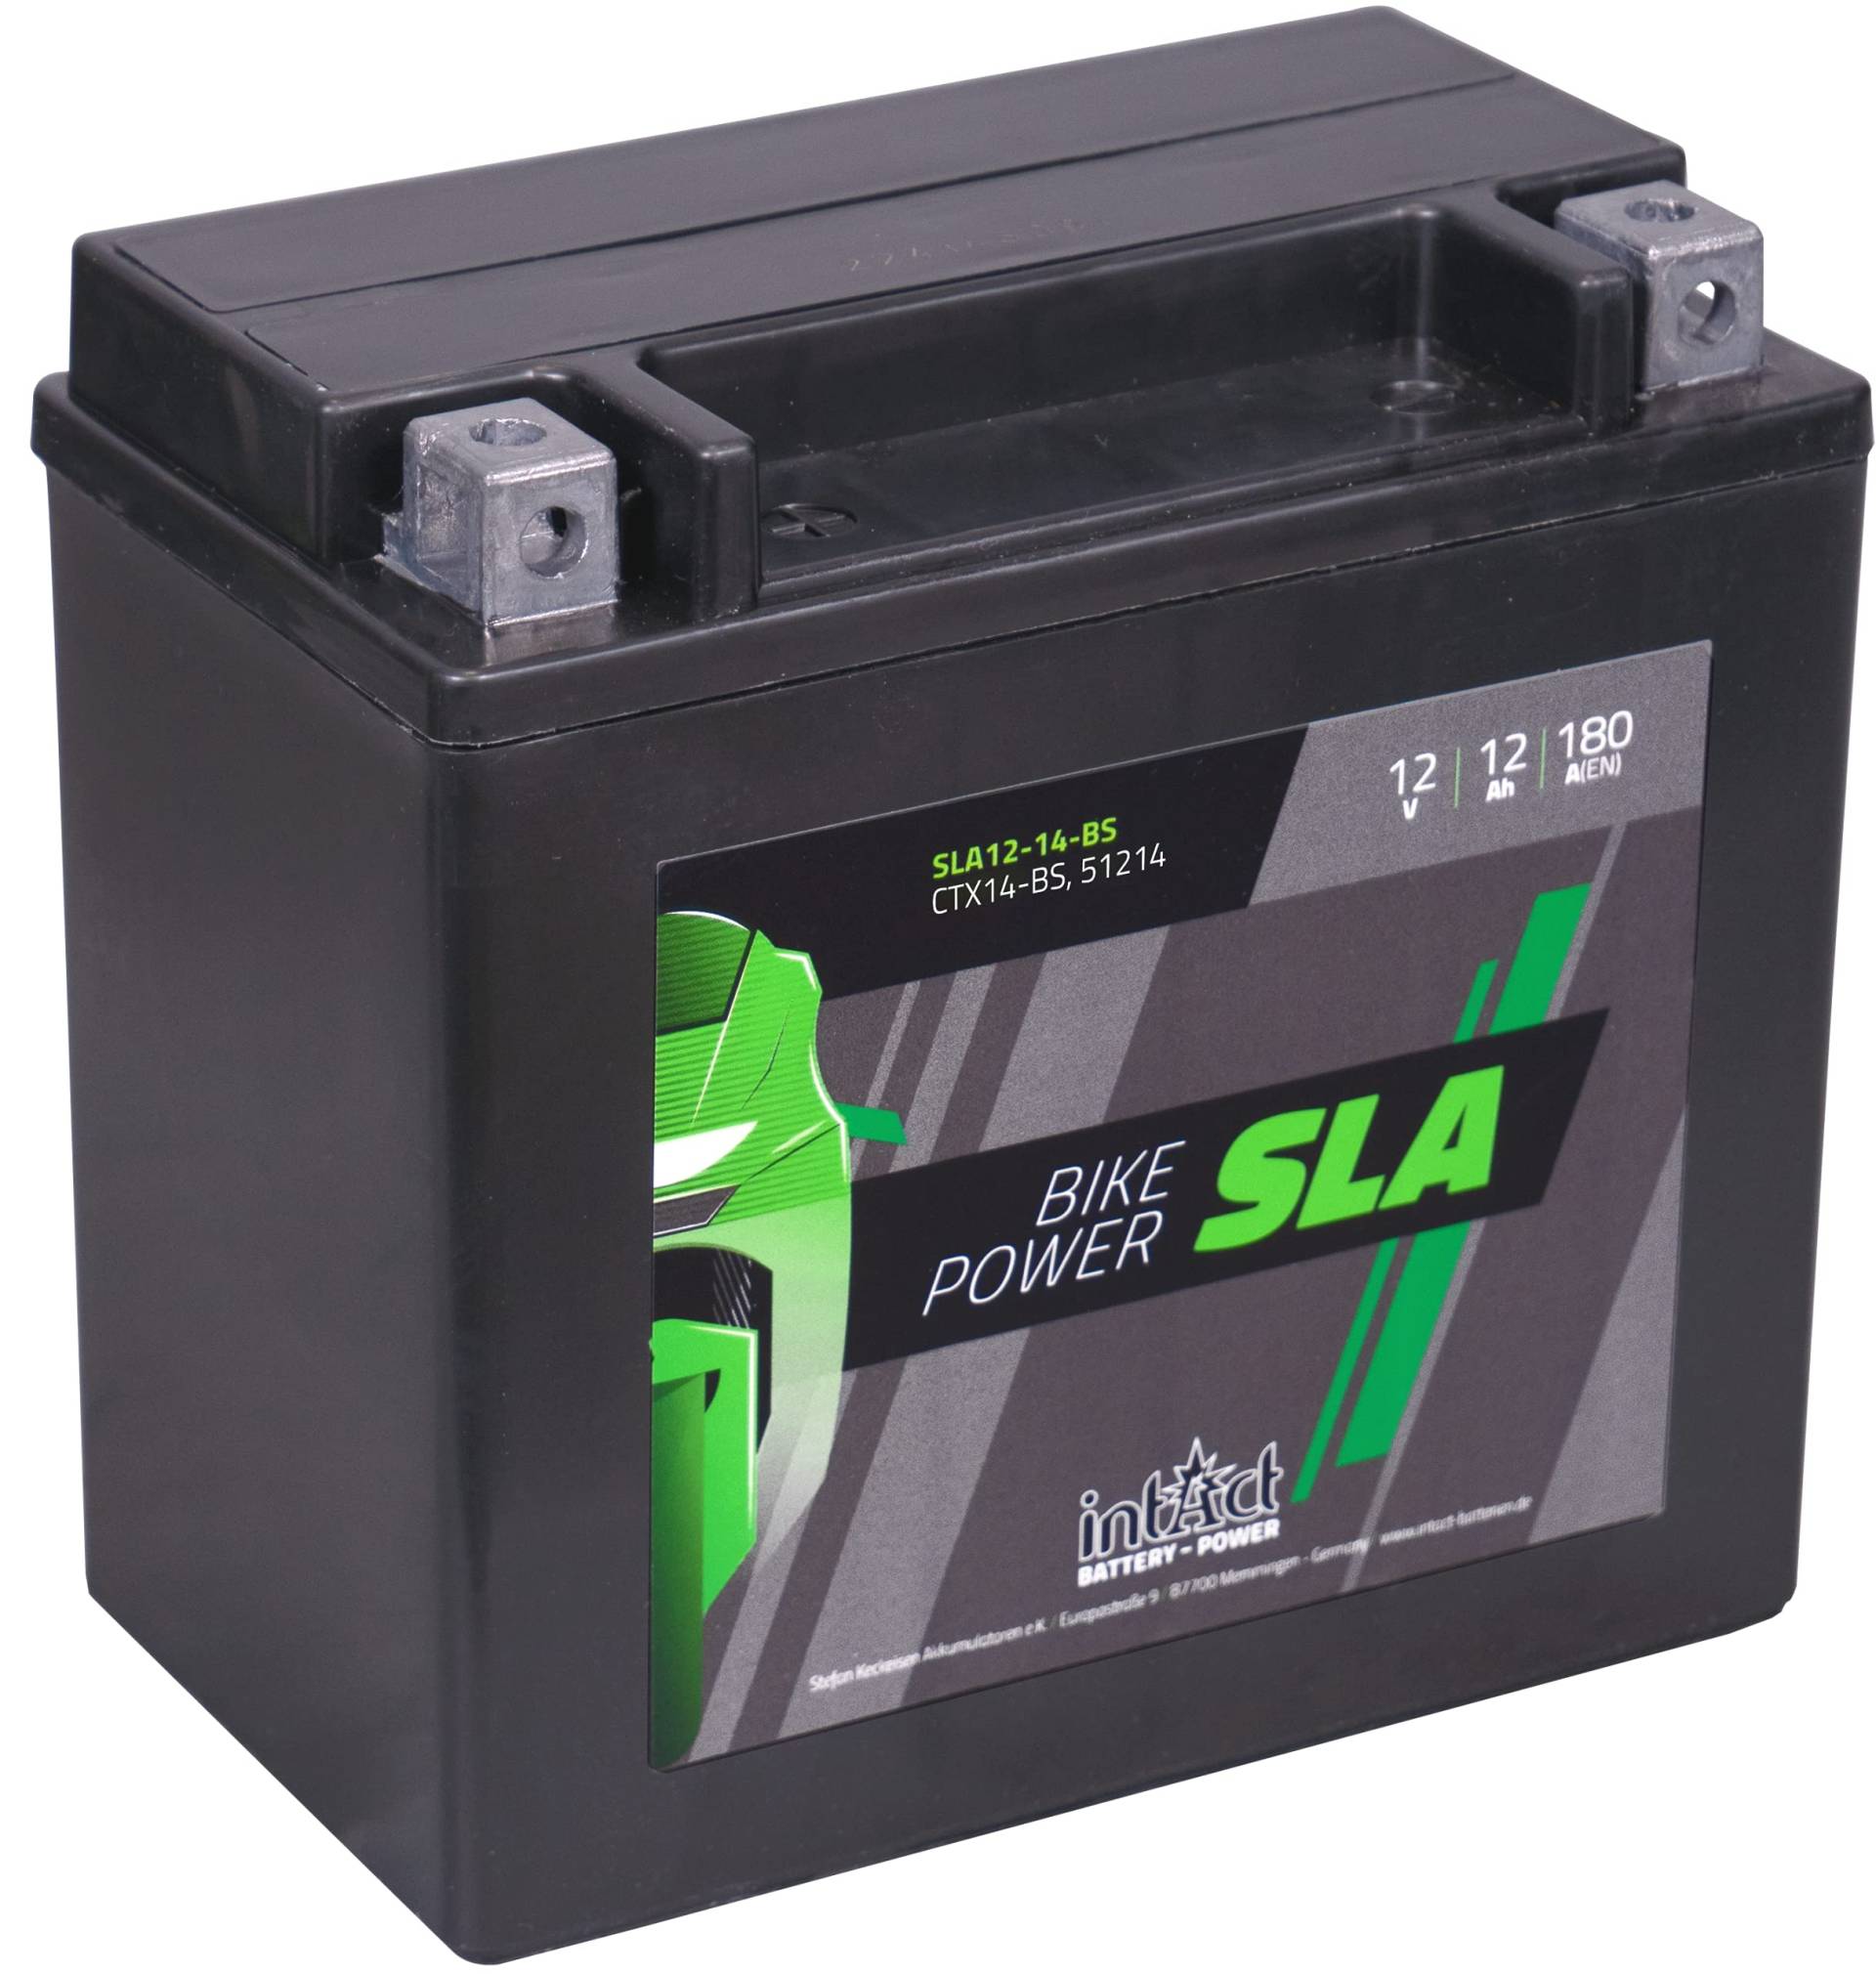 intAct - AGM MOTORRADBATTERIE | Batterie für Motorrad, Quad uvm. | Wartungsfreier & auslaufsicherer Akku | SLA12-14-BS, CTX14-BS, 51214, 12V Batterie, 12 AH (c20), 180 A (EN) | Maße: 150x87x145mm von Intact